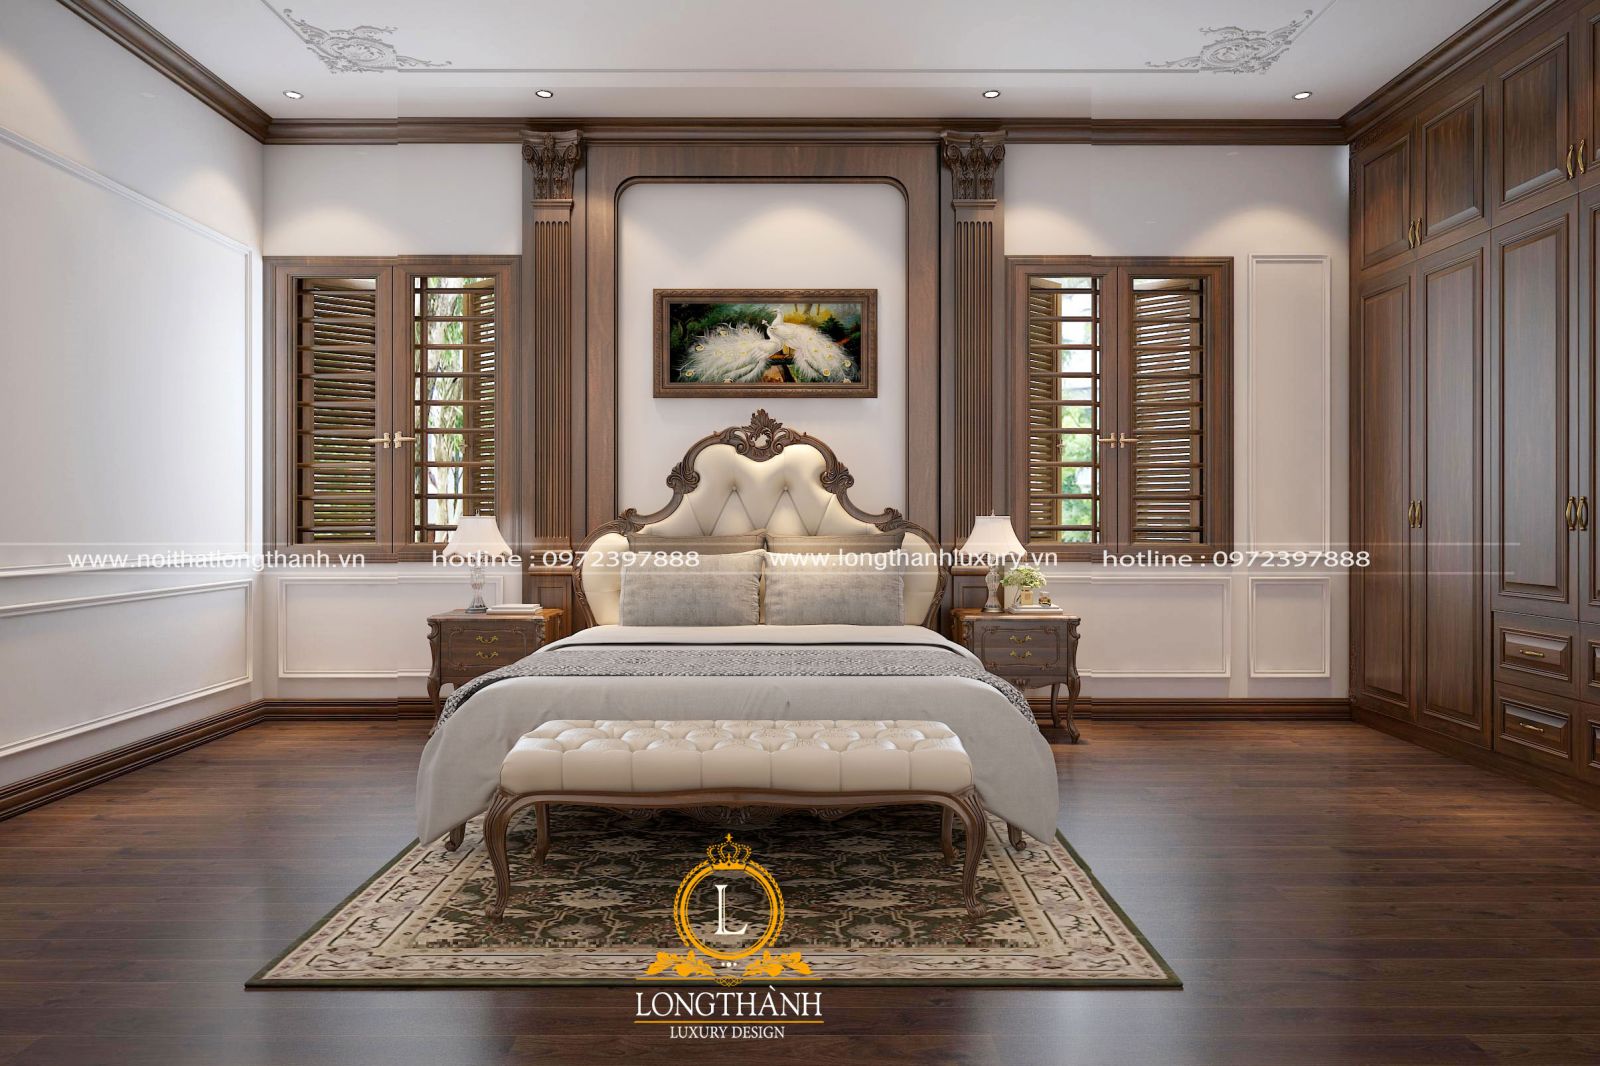 Cửa sổ phòng ngủ cũng được thiết kế một cách cân đối, hài hòa, làm tôn thêm vẻ đẹp cho phòng ngủ tân cổ điển